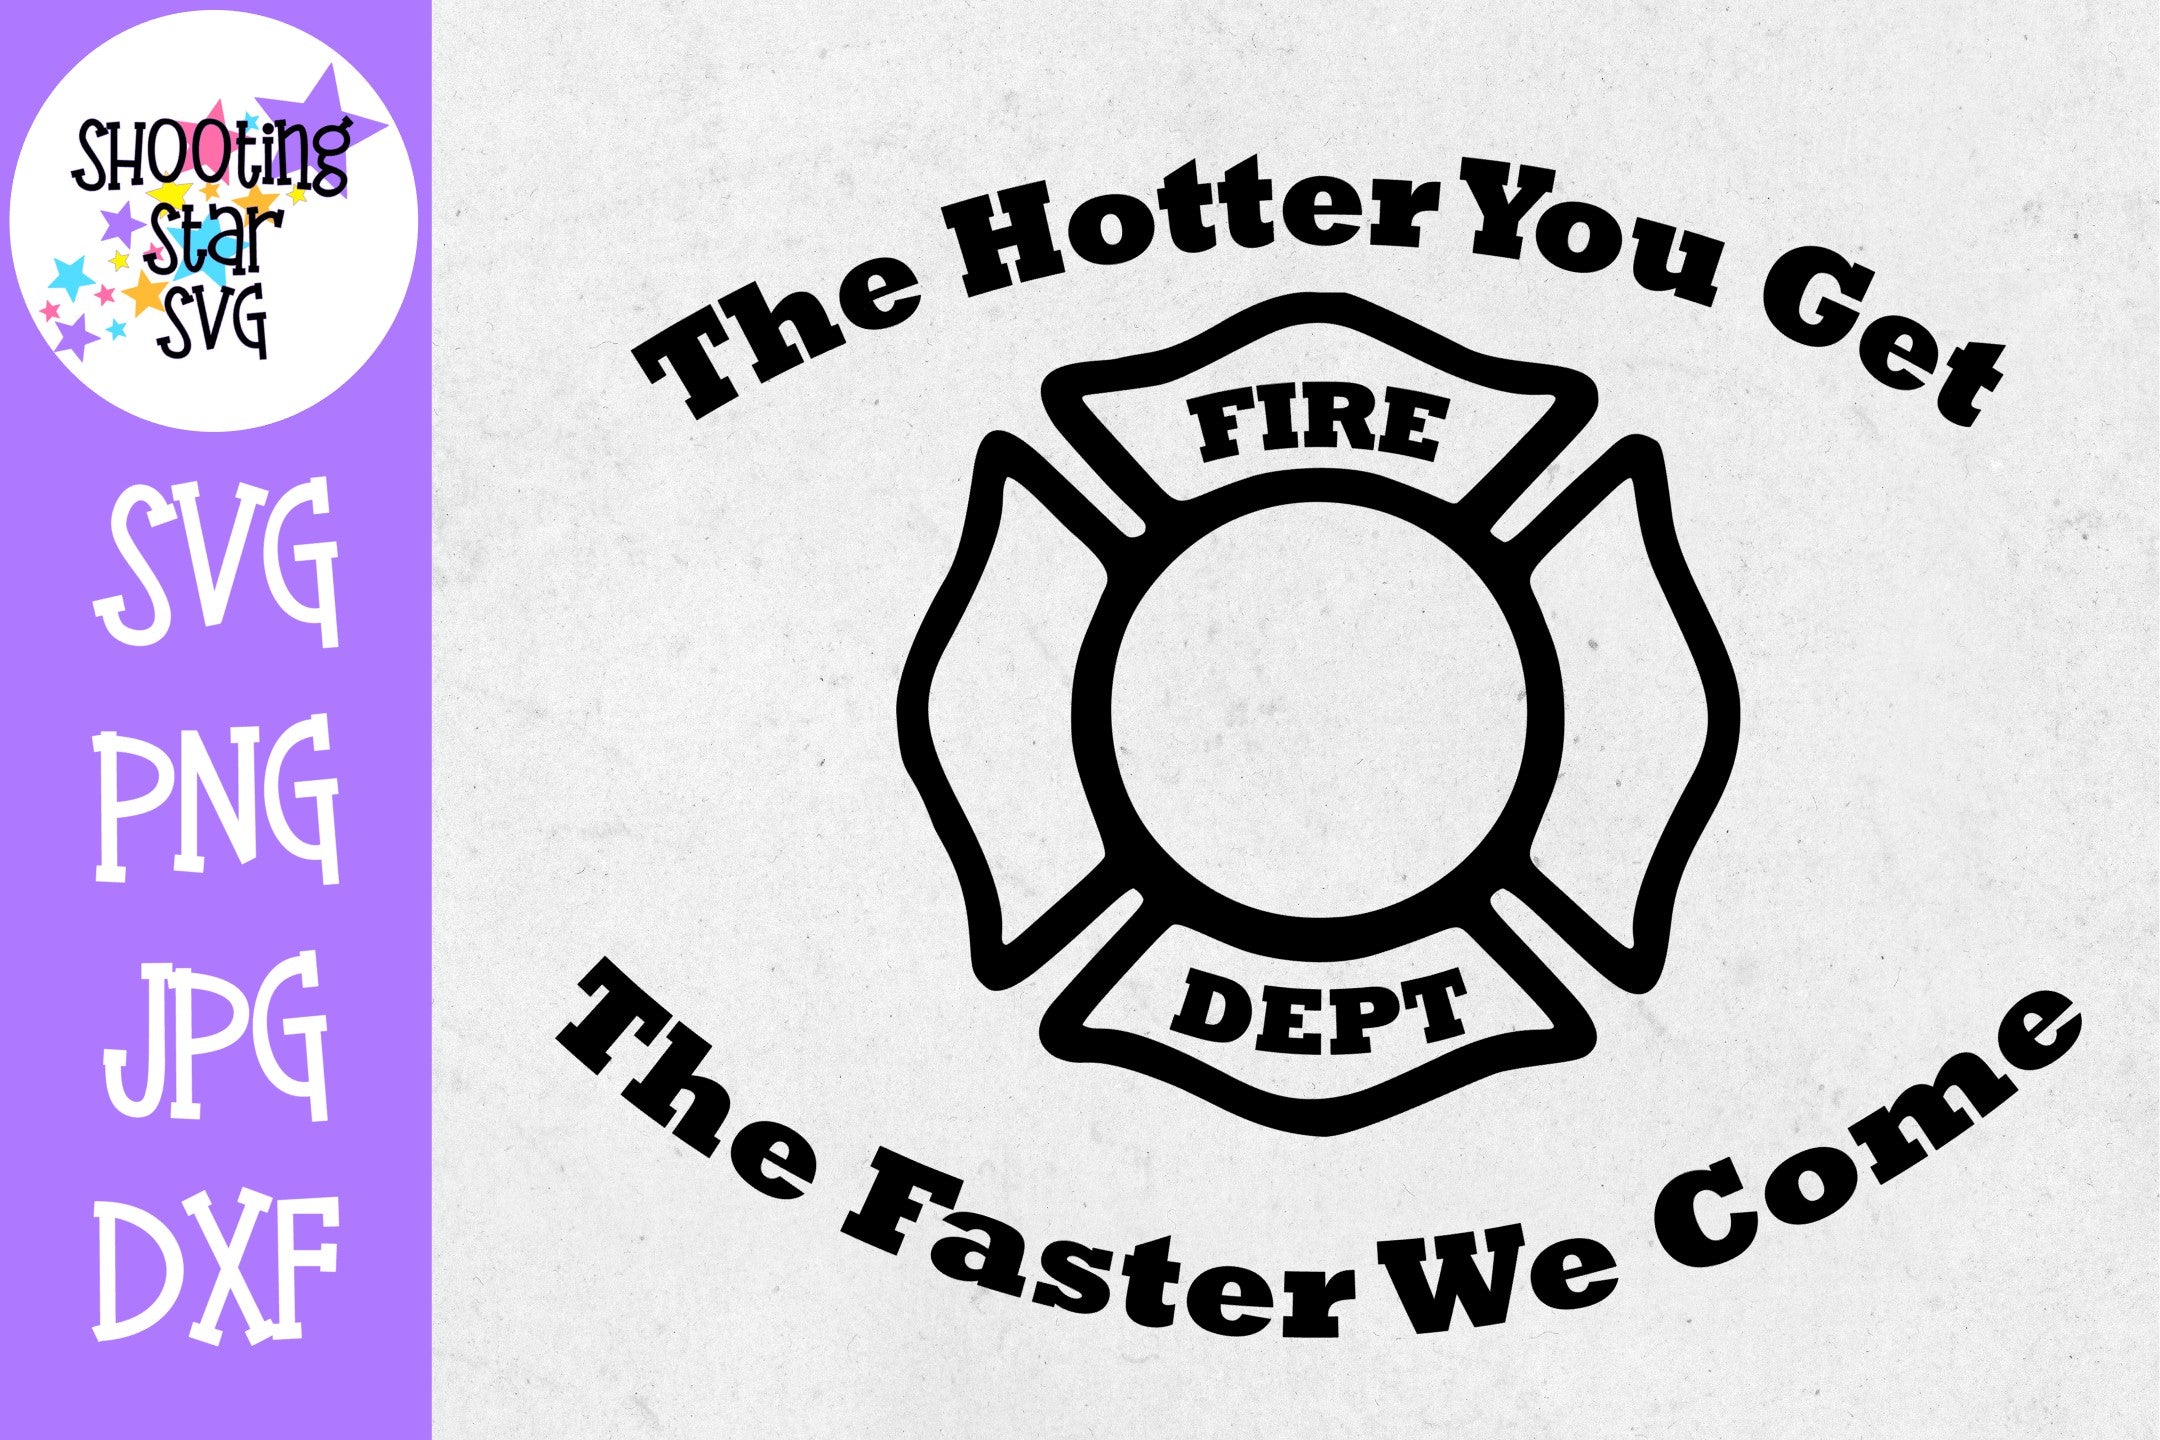 Hotter you Get Faster We Come - Funny SVG - Firefighter SVG